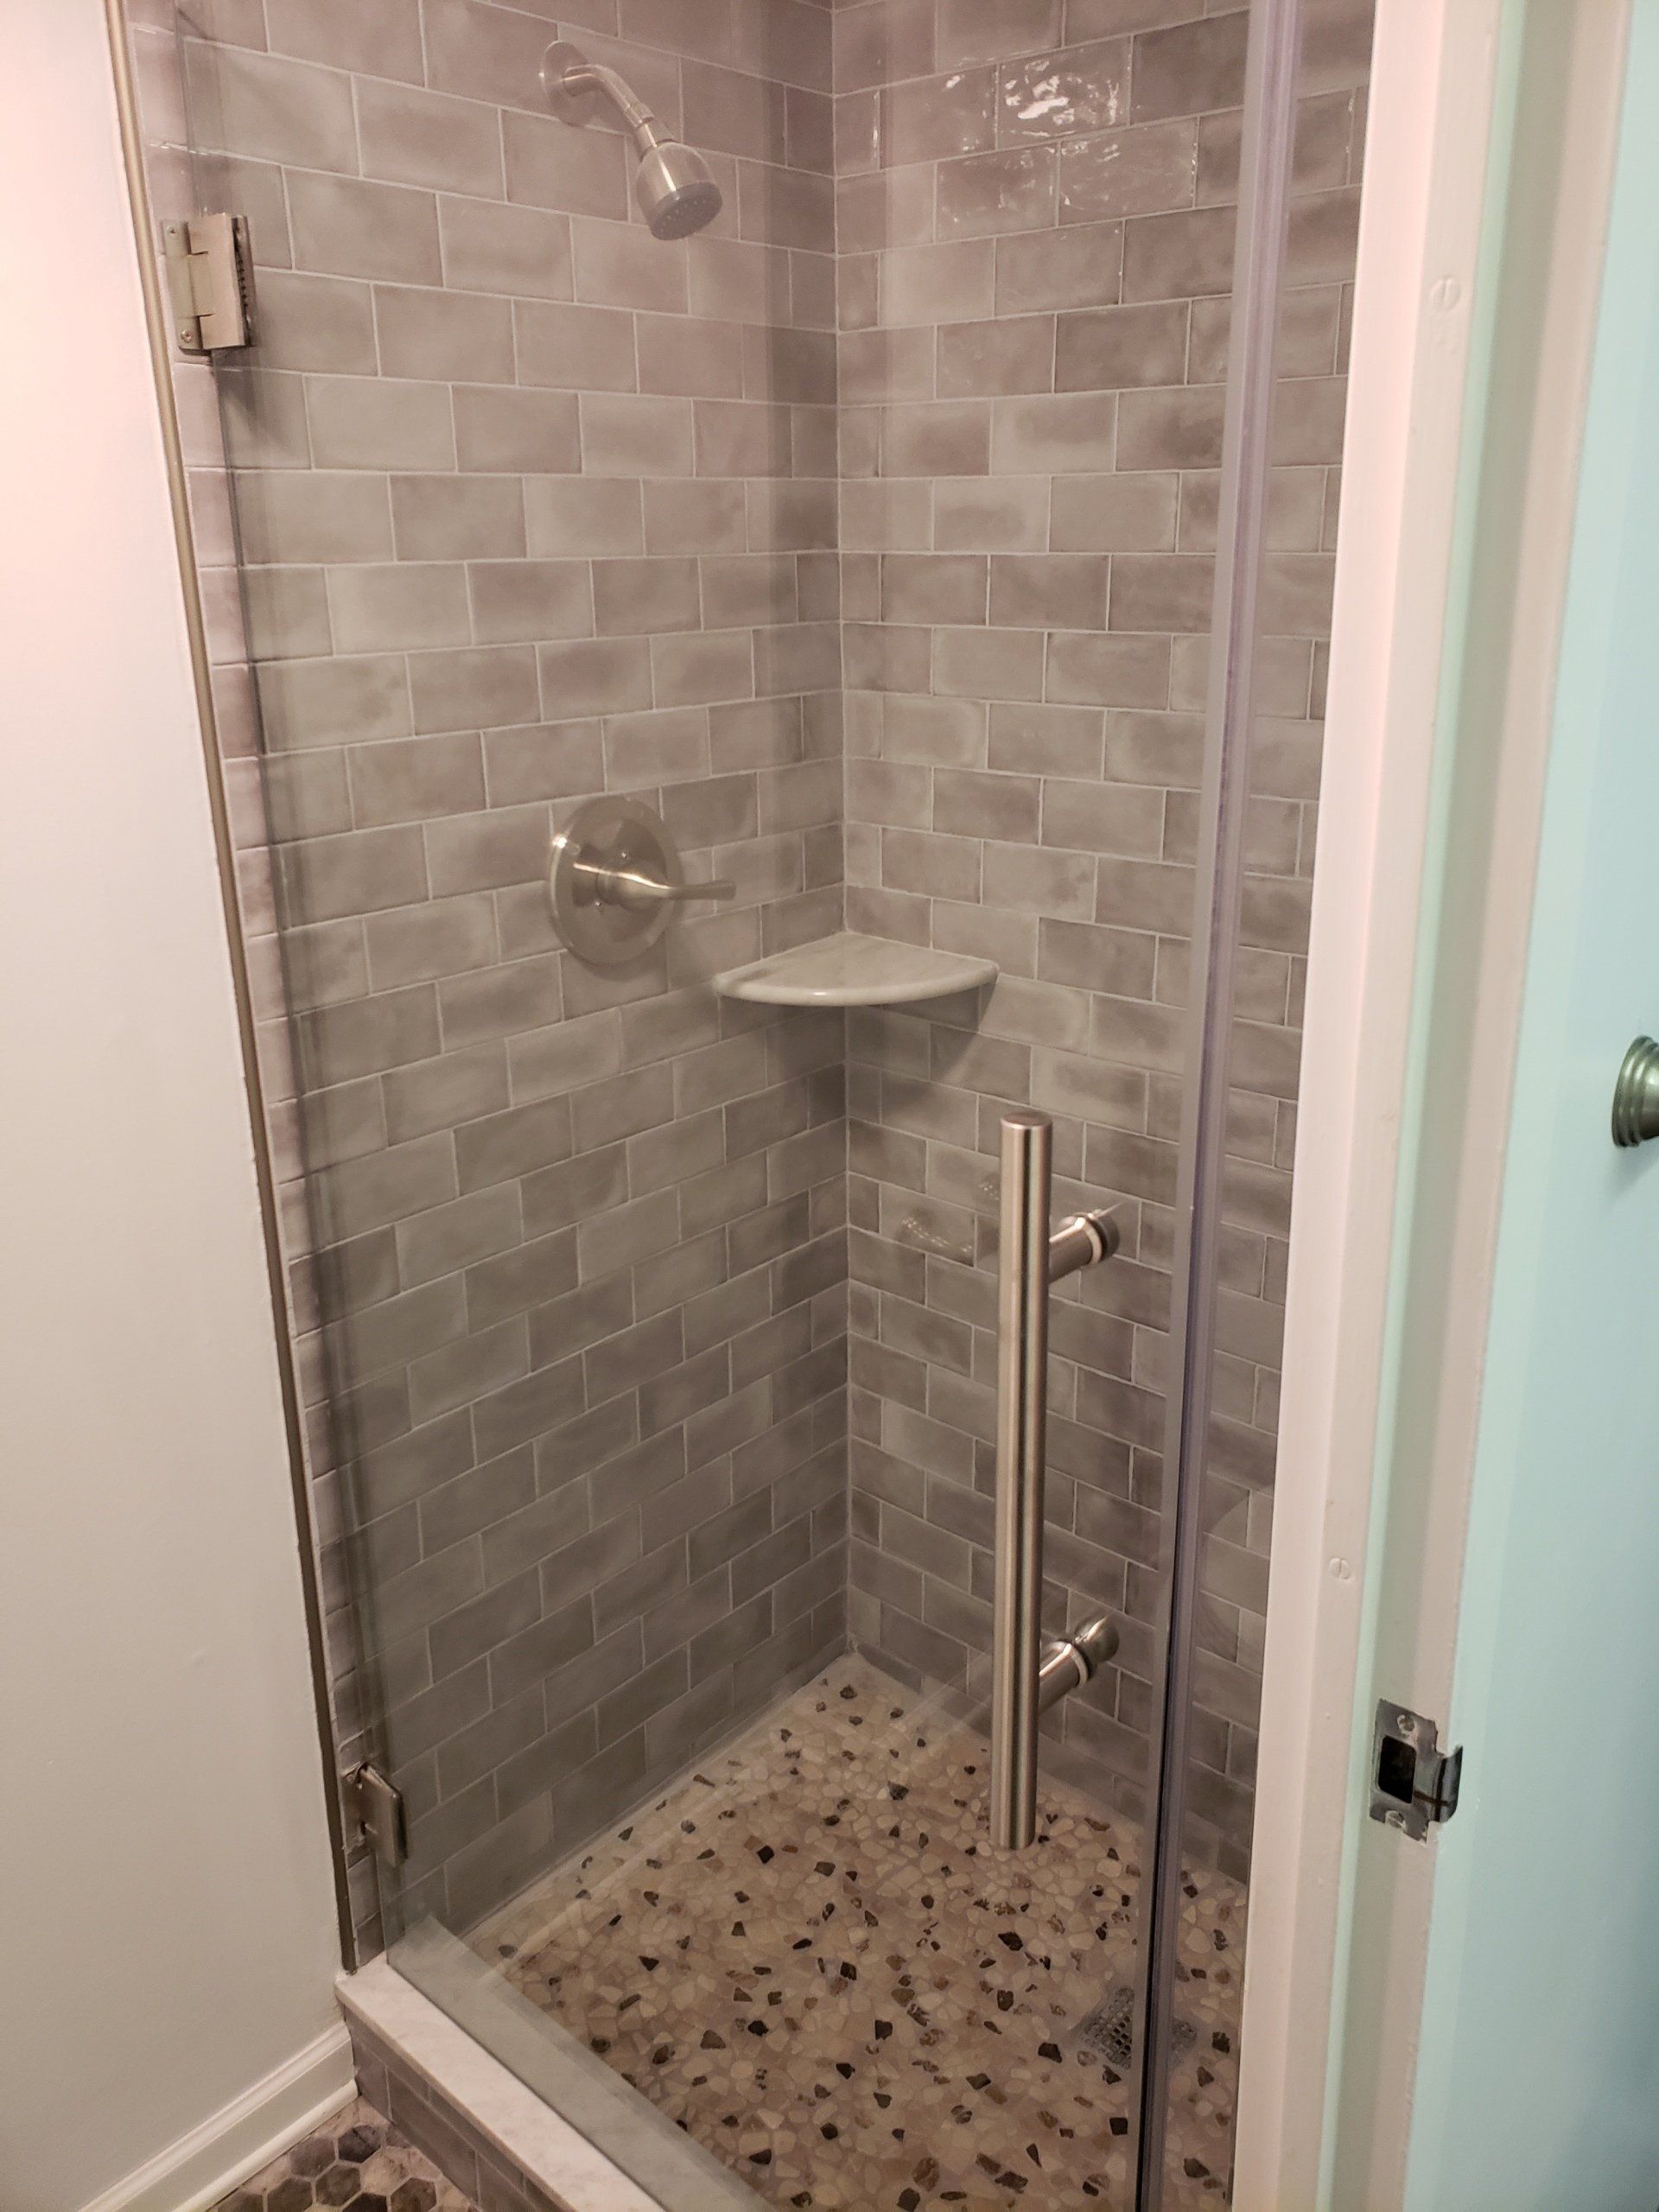 Jenkintown condo bathroom remodel close up of shower floor to ceiling subway tiles and shower door.